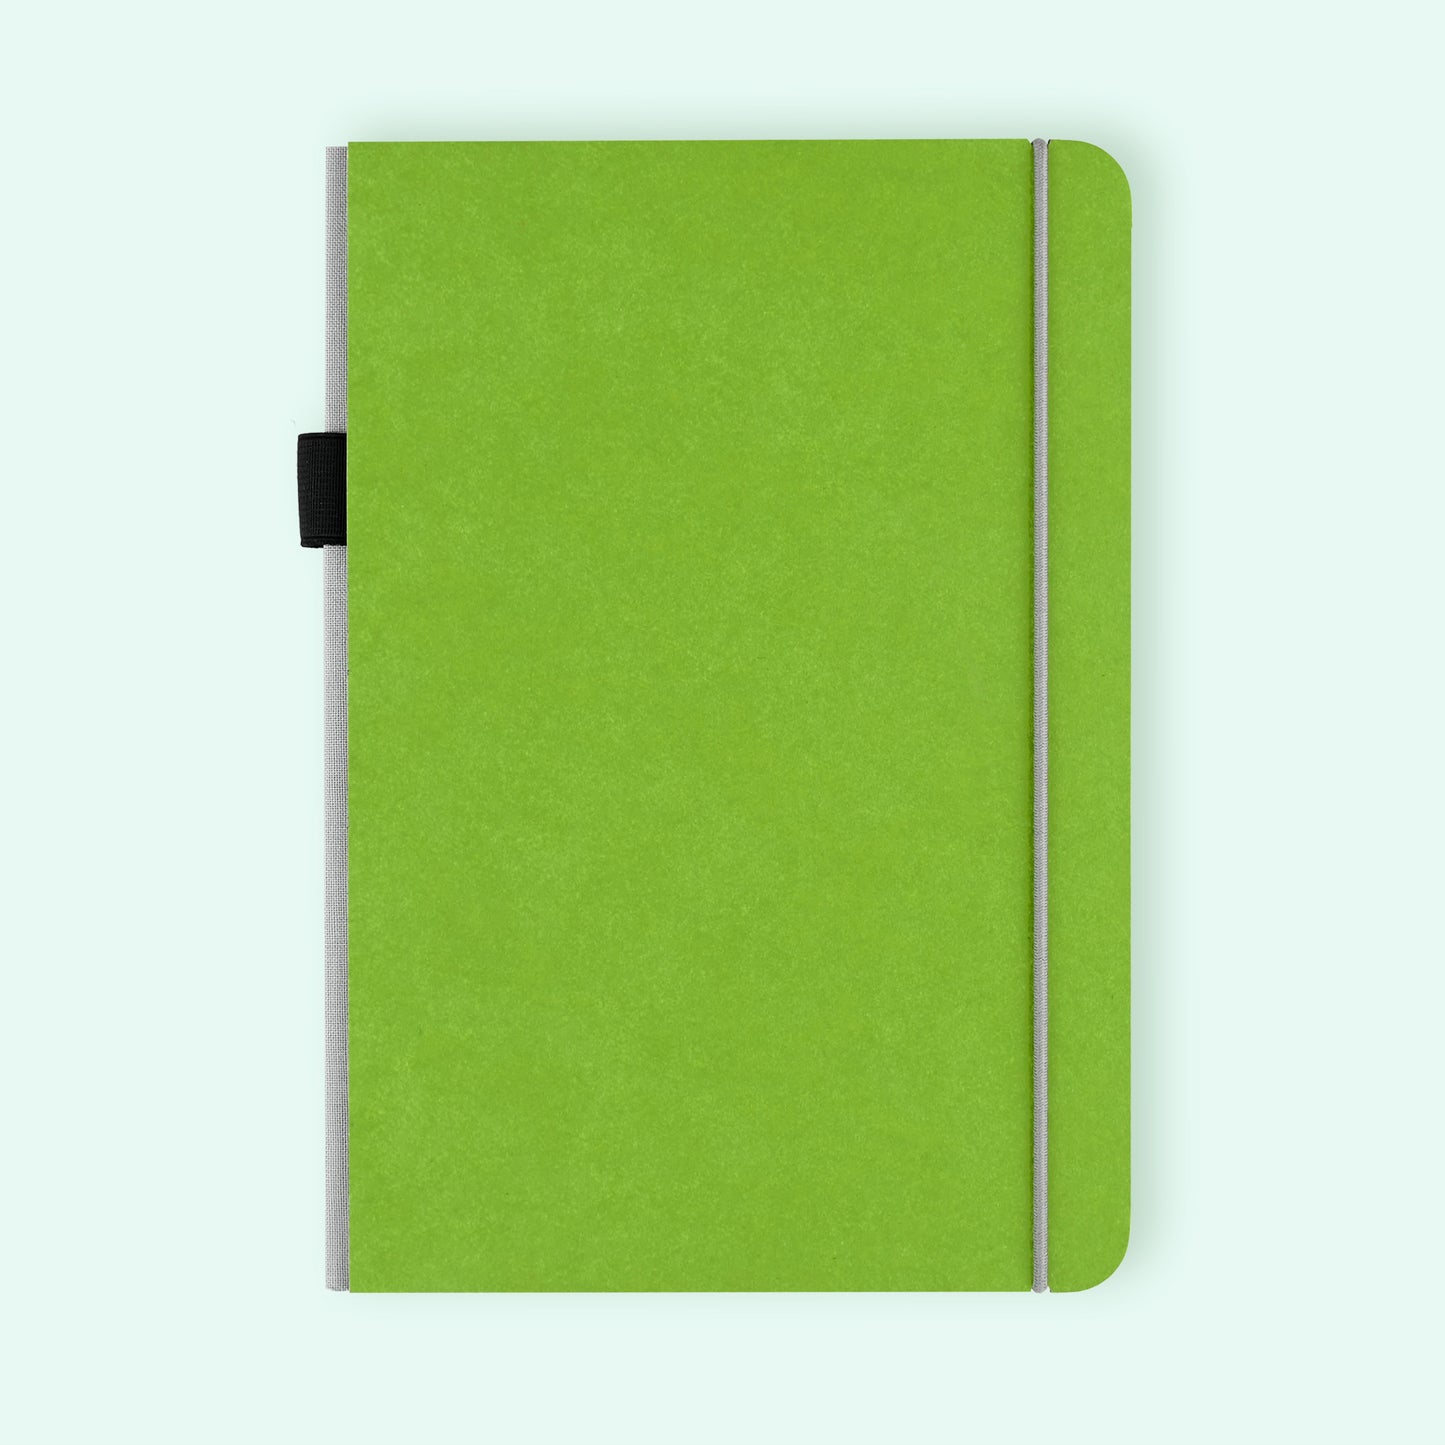 Bindewerk New Generation A5 Dot Grid Notebook Green 